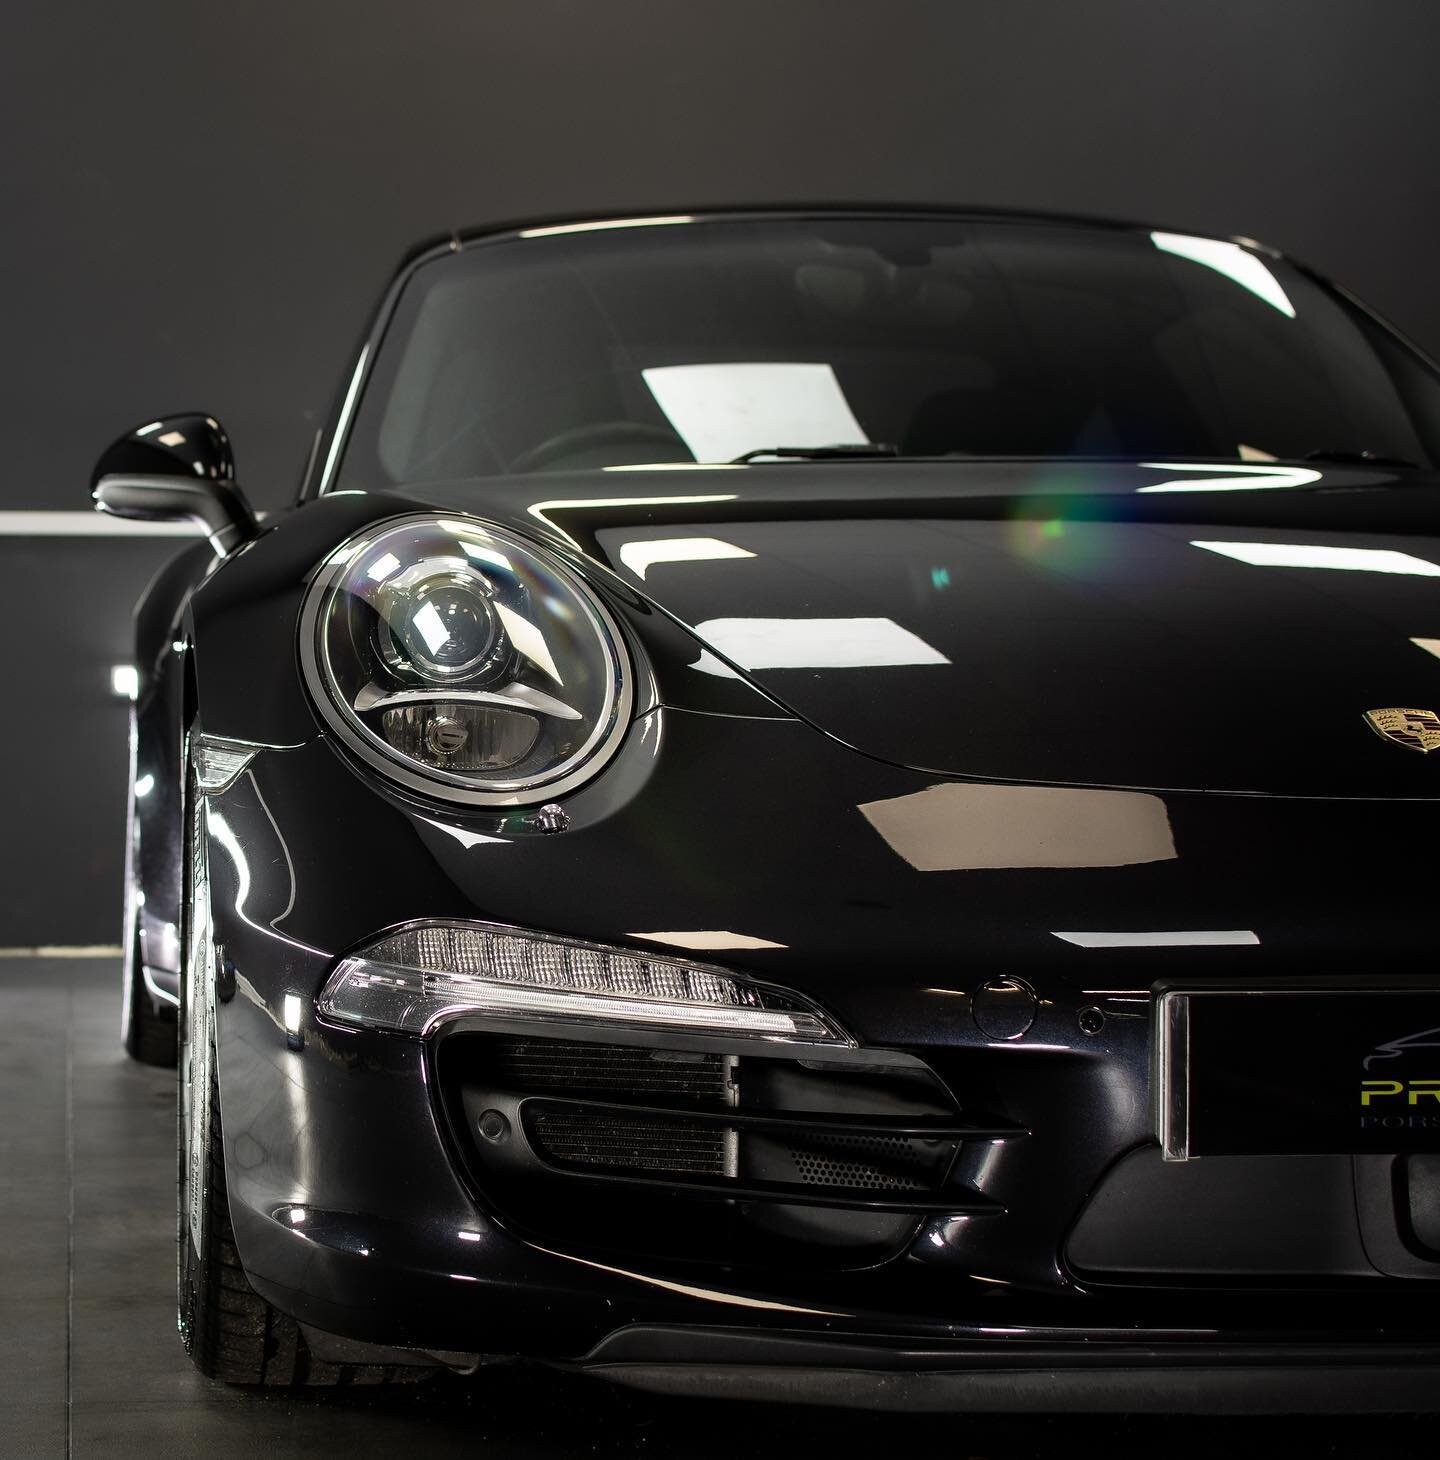 Basalt black Porsche 991 4S now fully coated with @gtechniq Evo V4 ceramic